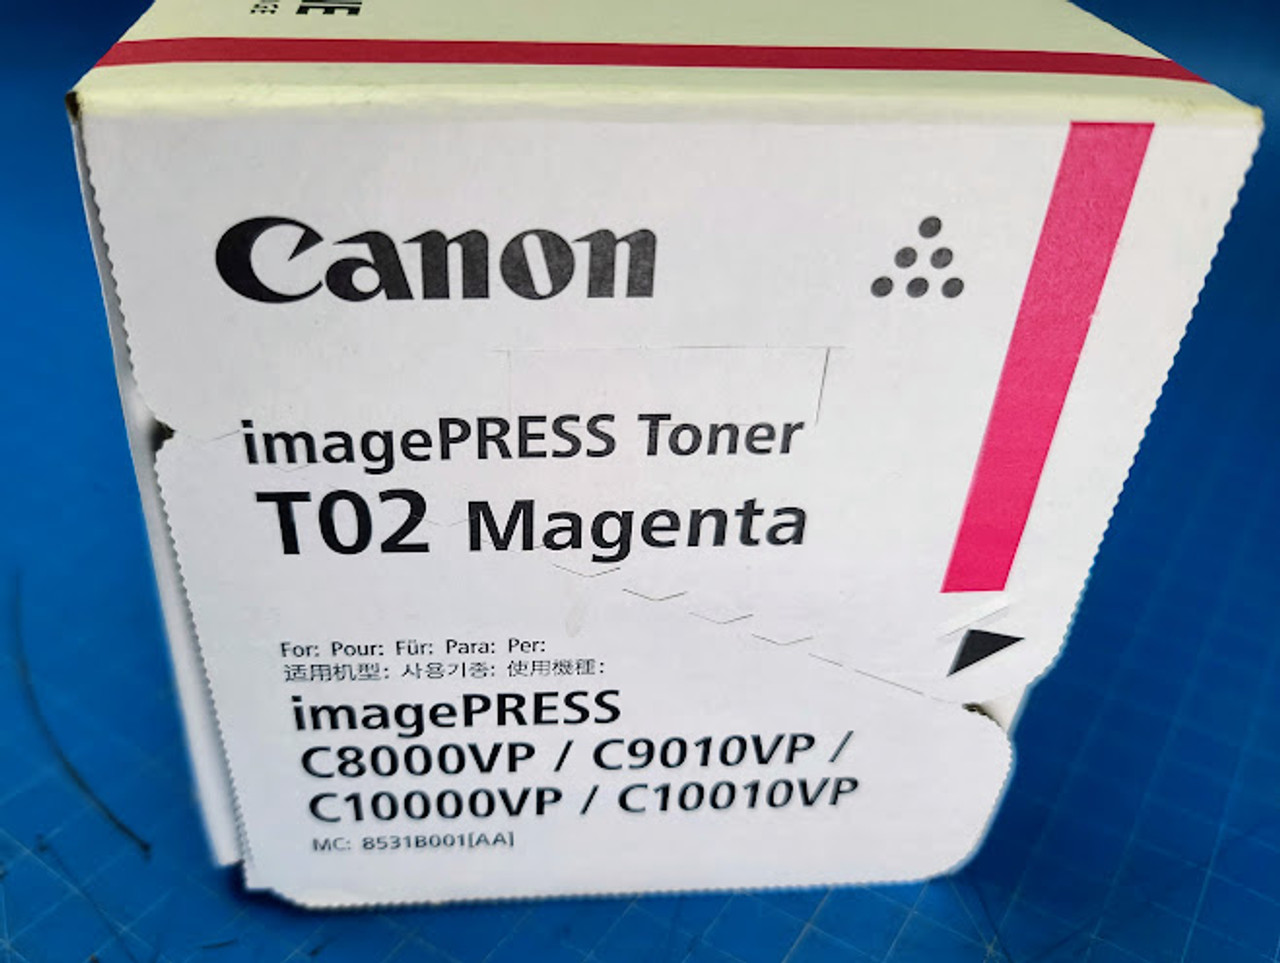 Canon T02 imagePRESS C8000VP / C9010VP / C10000VP / C10010VP Magenta Toner 8531B001AA